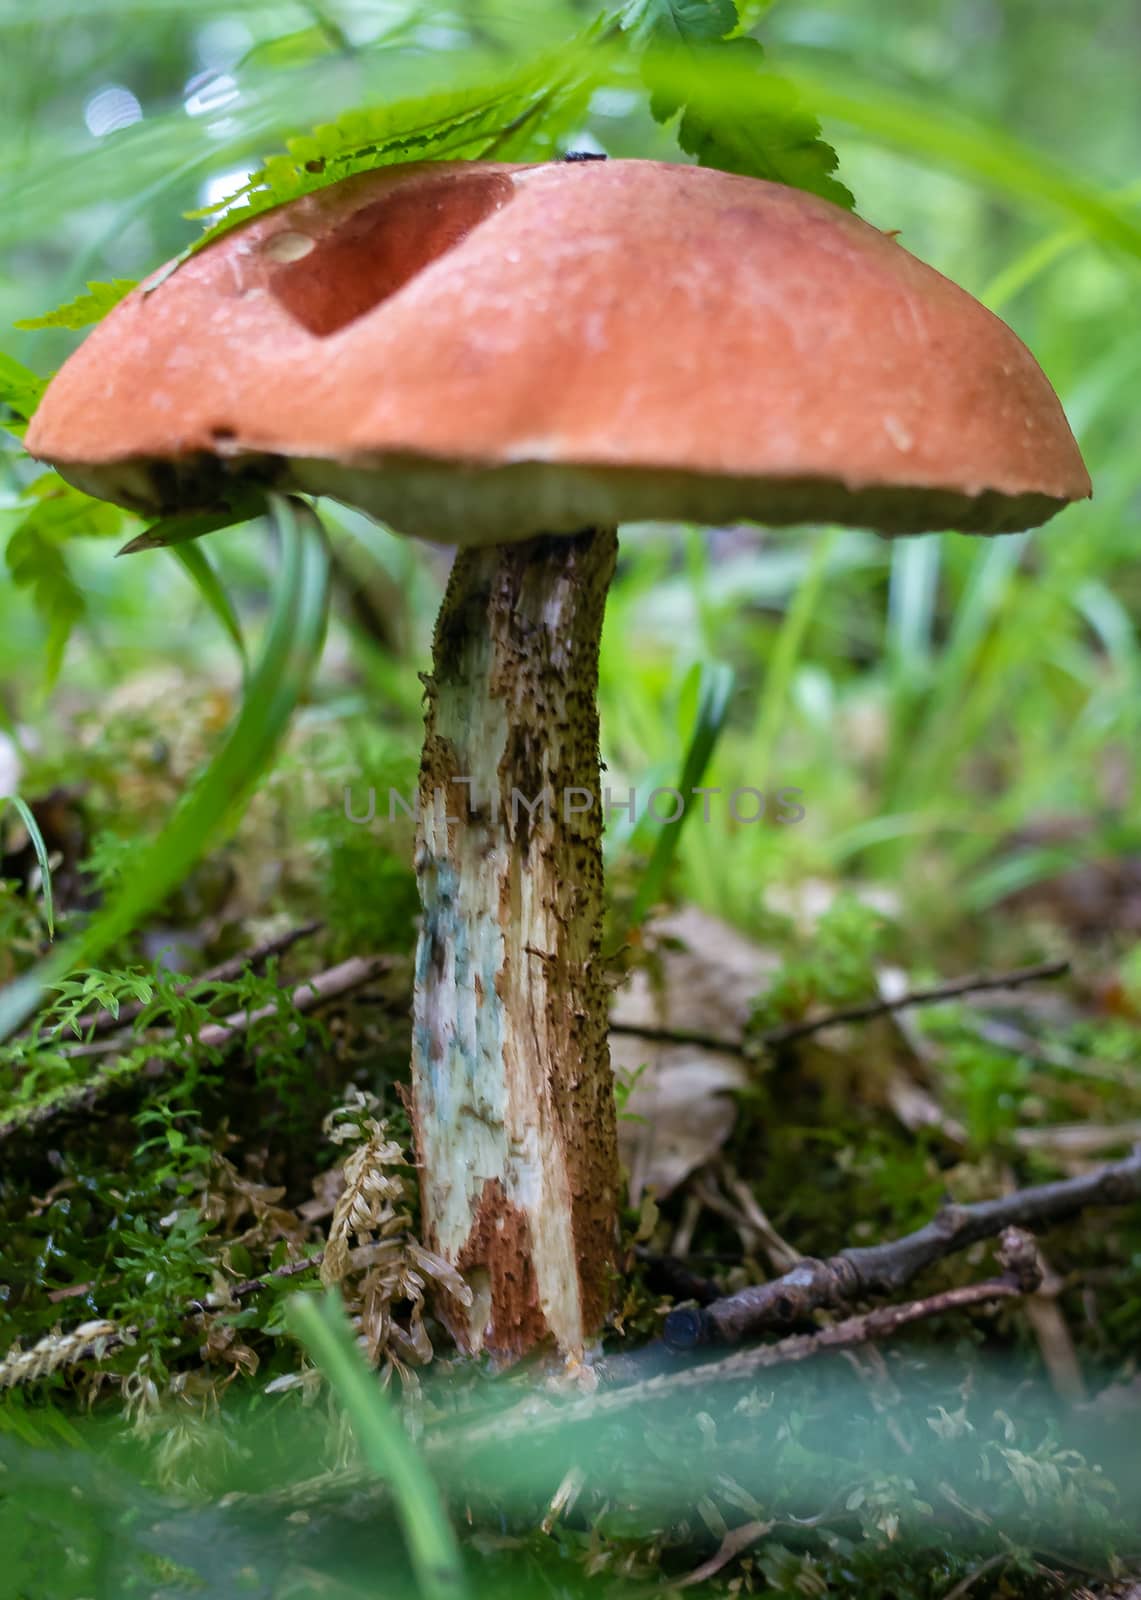 Orange cap of aspen mushroom in the autumn forest